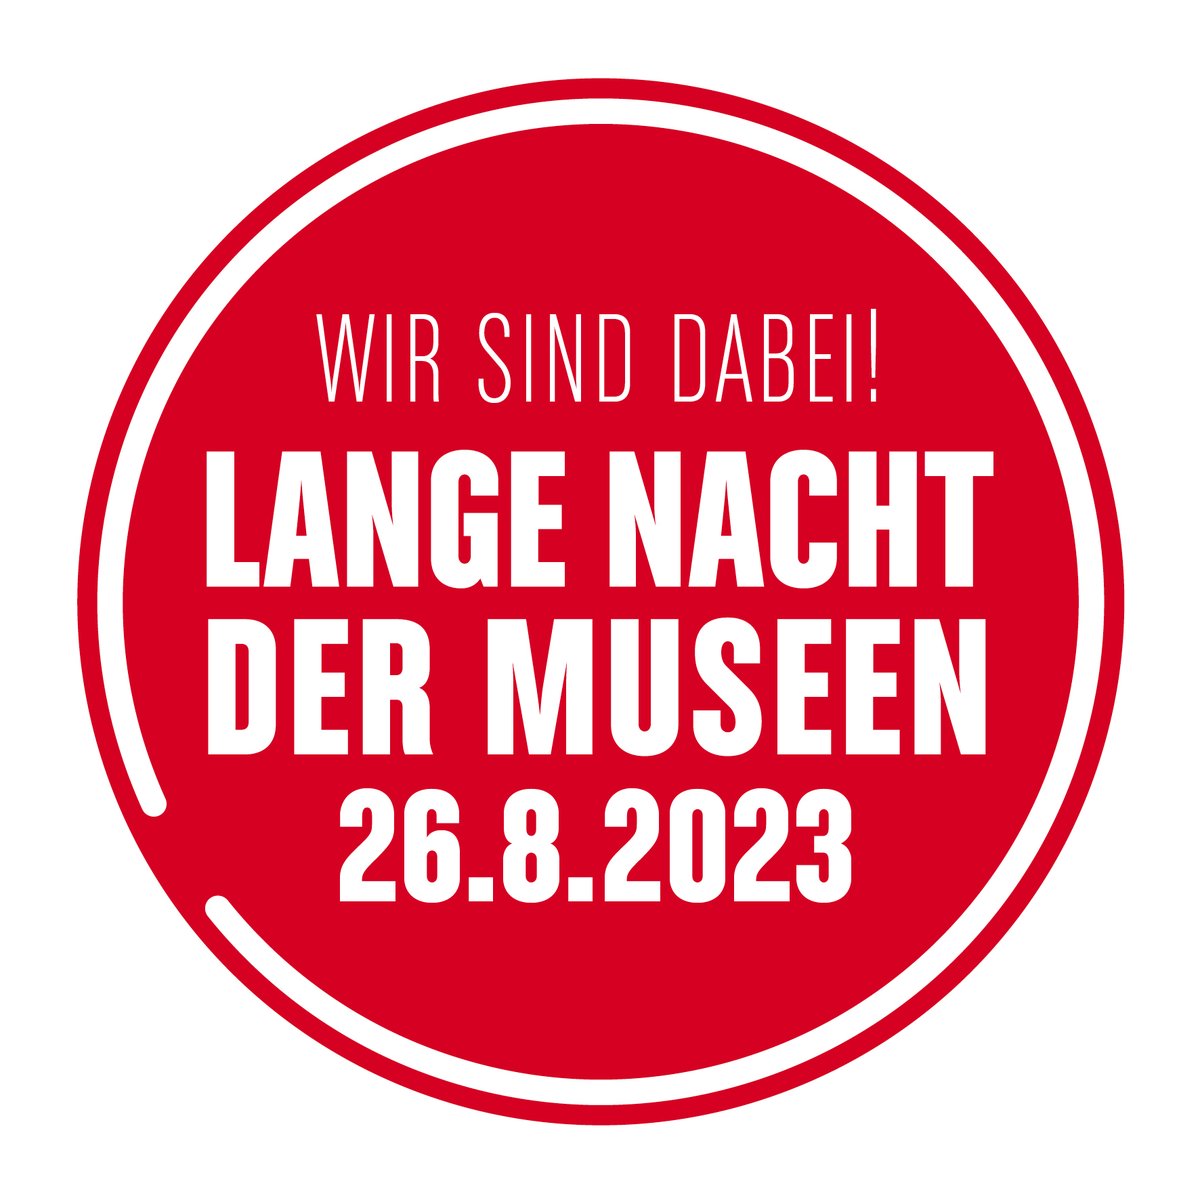 Ab heute beginnt der Kartenverkauf für die Lange Nacht der Museen und wir sind dabei! 🌜🔦 adk.de/de/programm/?w… Weitere Infos und Tickets unter lange-nacht-der-museen.de/tickets